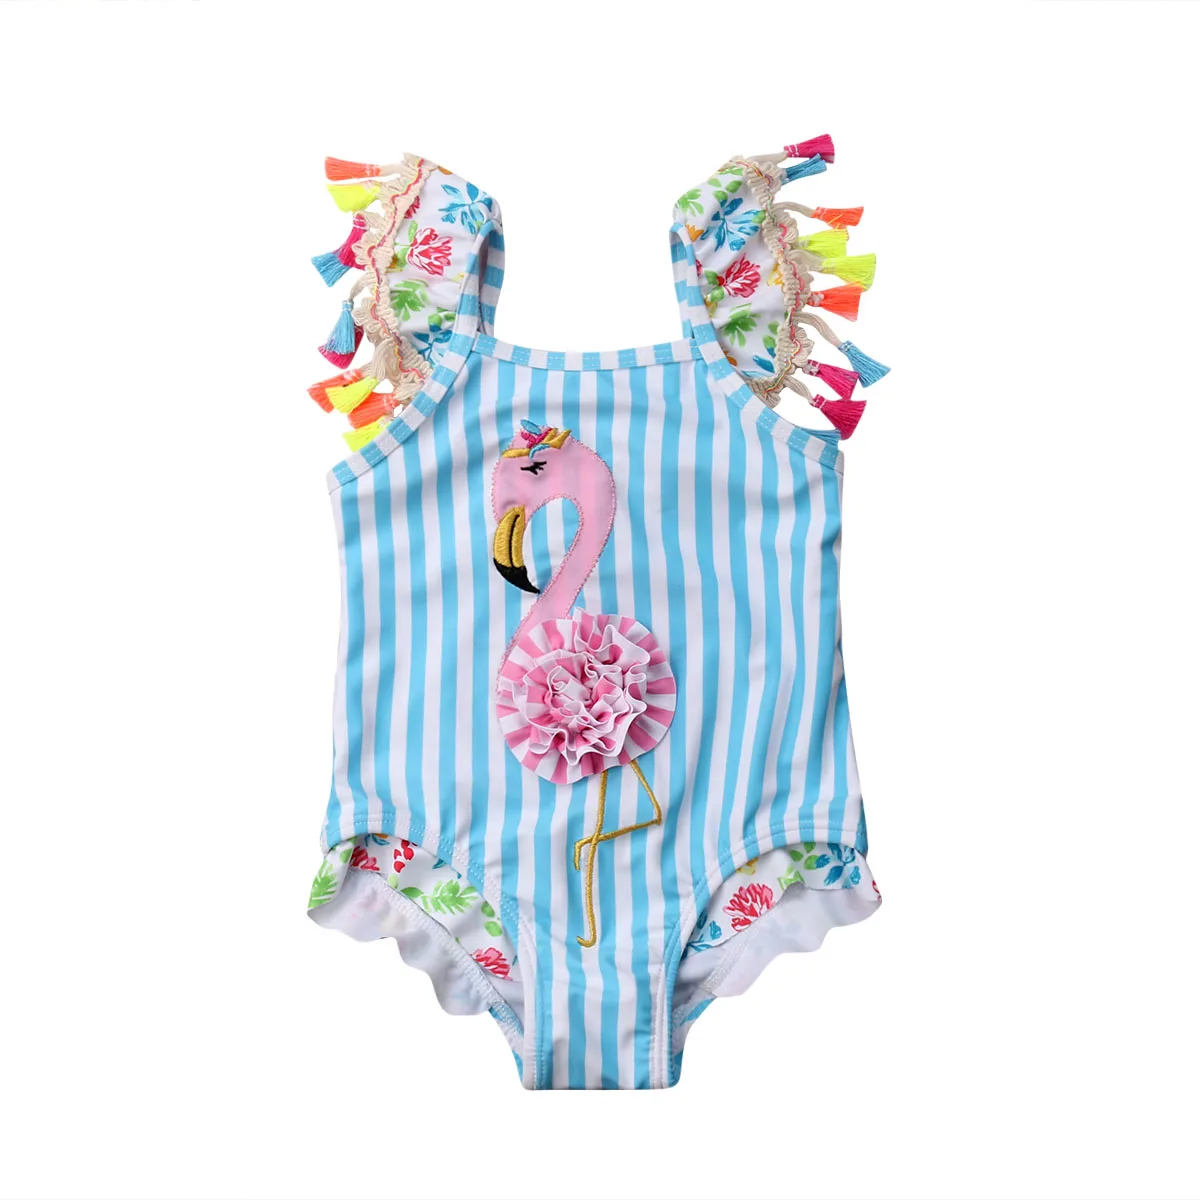 Купальный костюм в полоску с фламинго и кисточками для новорожденных девочек, купальный костюм, пляжная одежда для От 6 месяцев до 5 лет